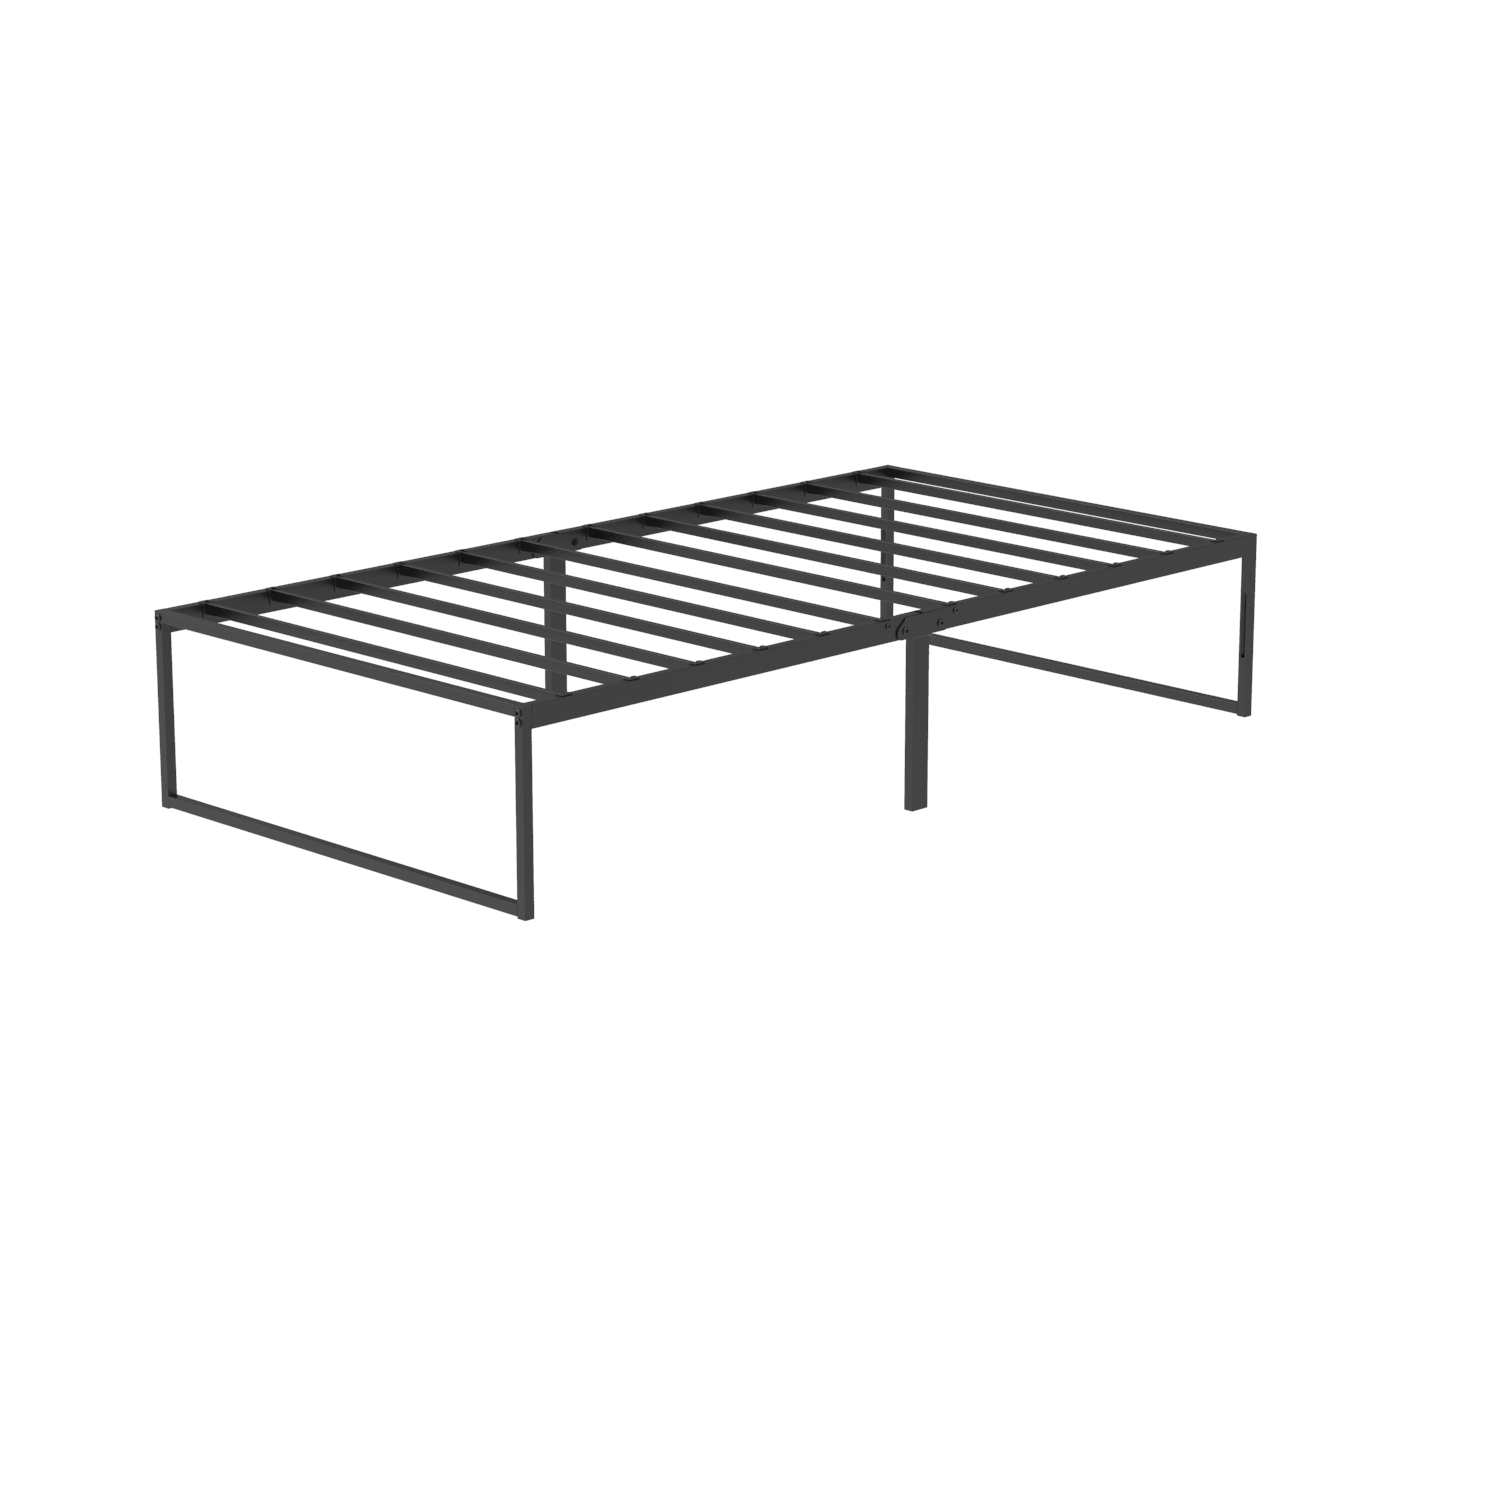 VENI HOME Modern Strong Durable Bed Frame Metal Platform Bed